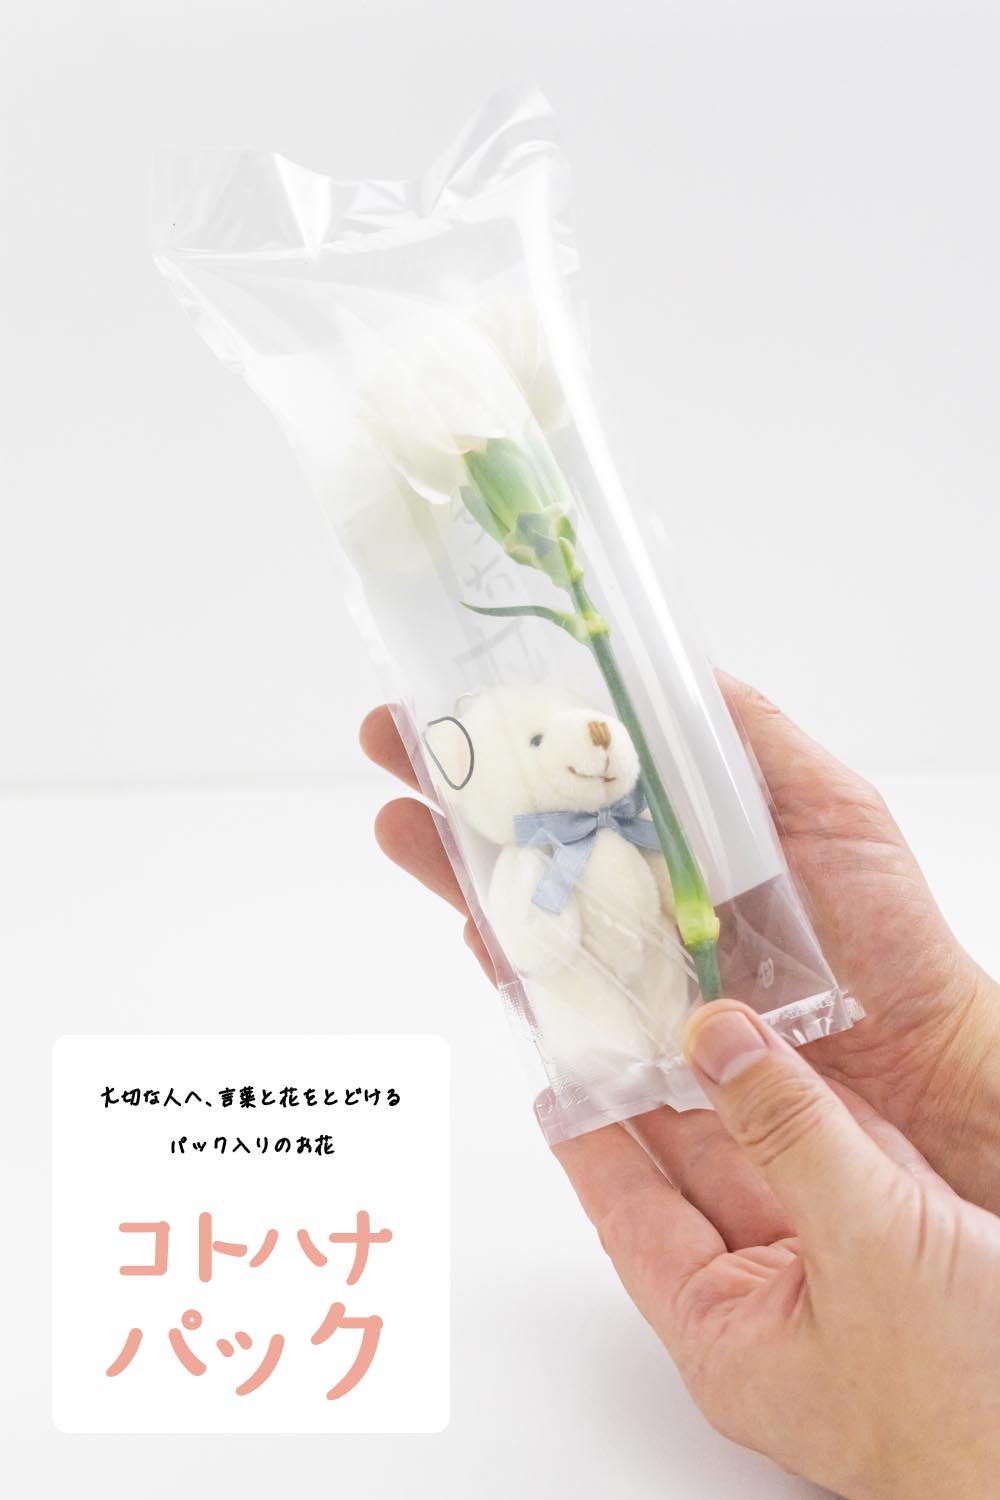 画像：大切な人へ、言葉と花を届けるパック入りのお花 「コトハナパック <ぱっくまエディション> 」カーネーション白 母の日向けお供えの花